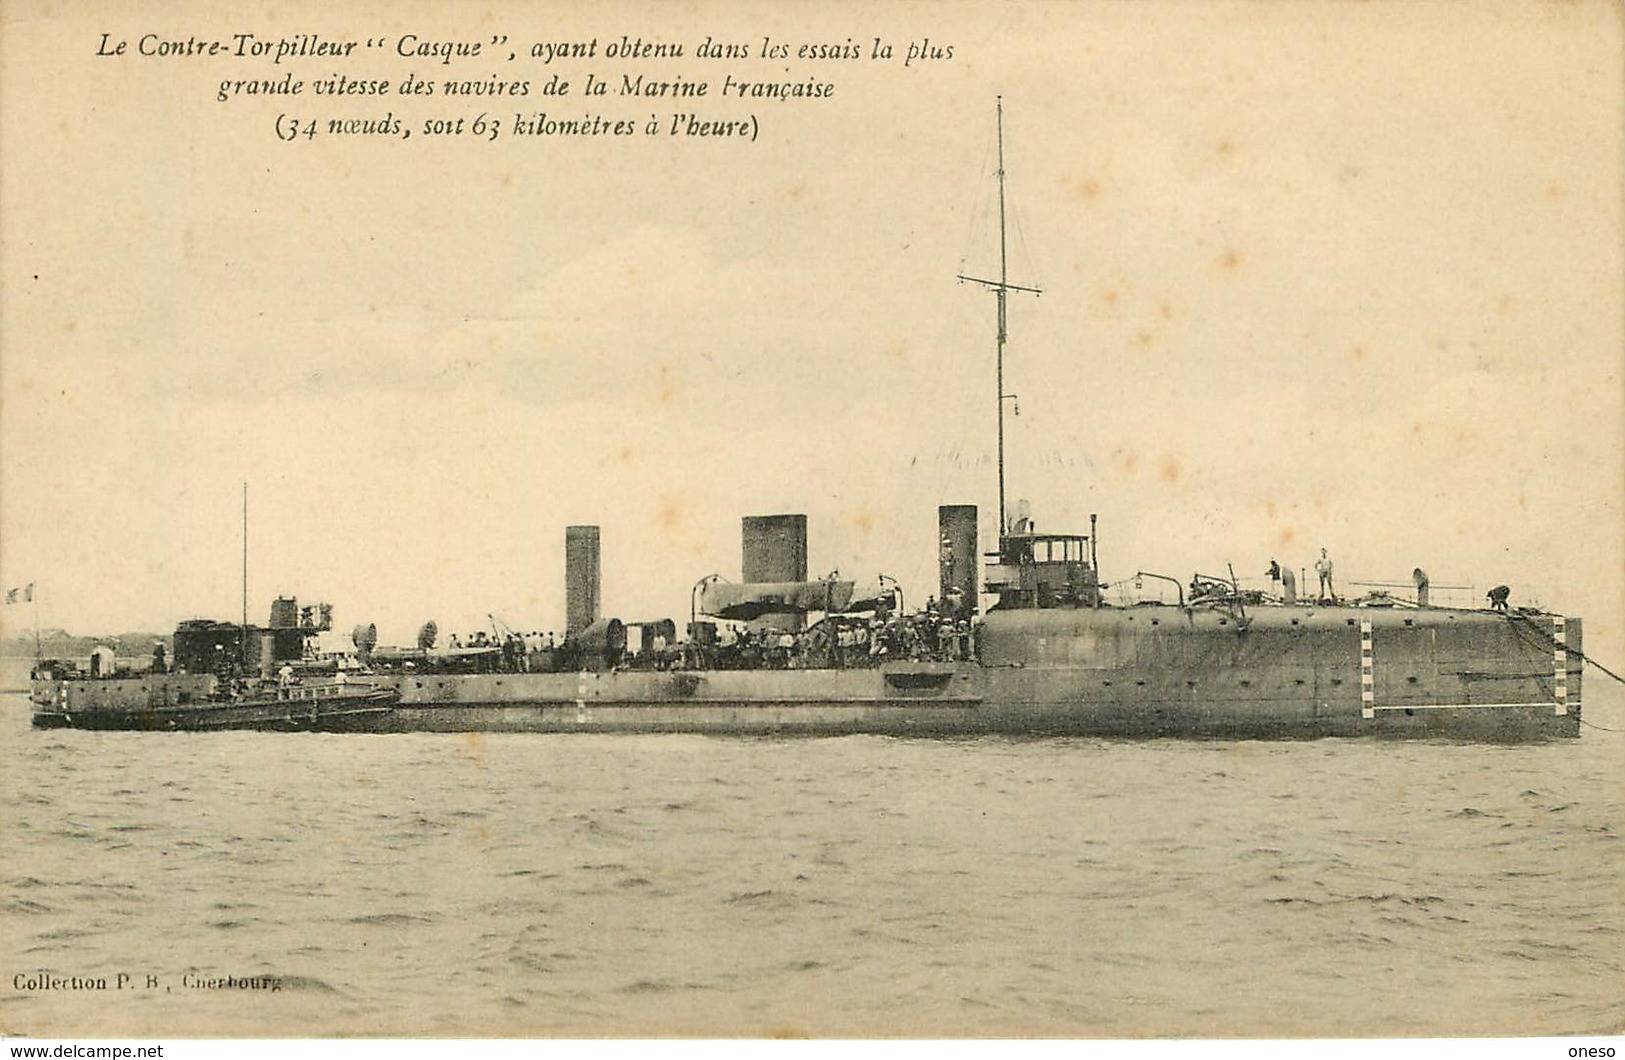 Thèmes - Lot N°391 - Bateau - Navires - Cartes sur le thème des bateaux de guerre - Lots en vrac - Lot de 120 cartes